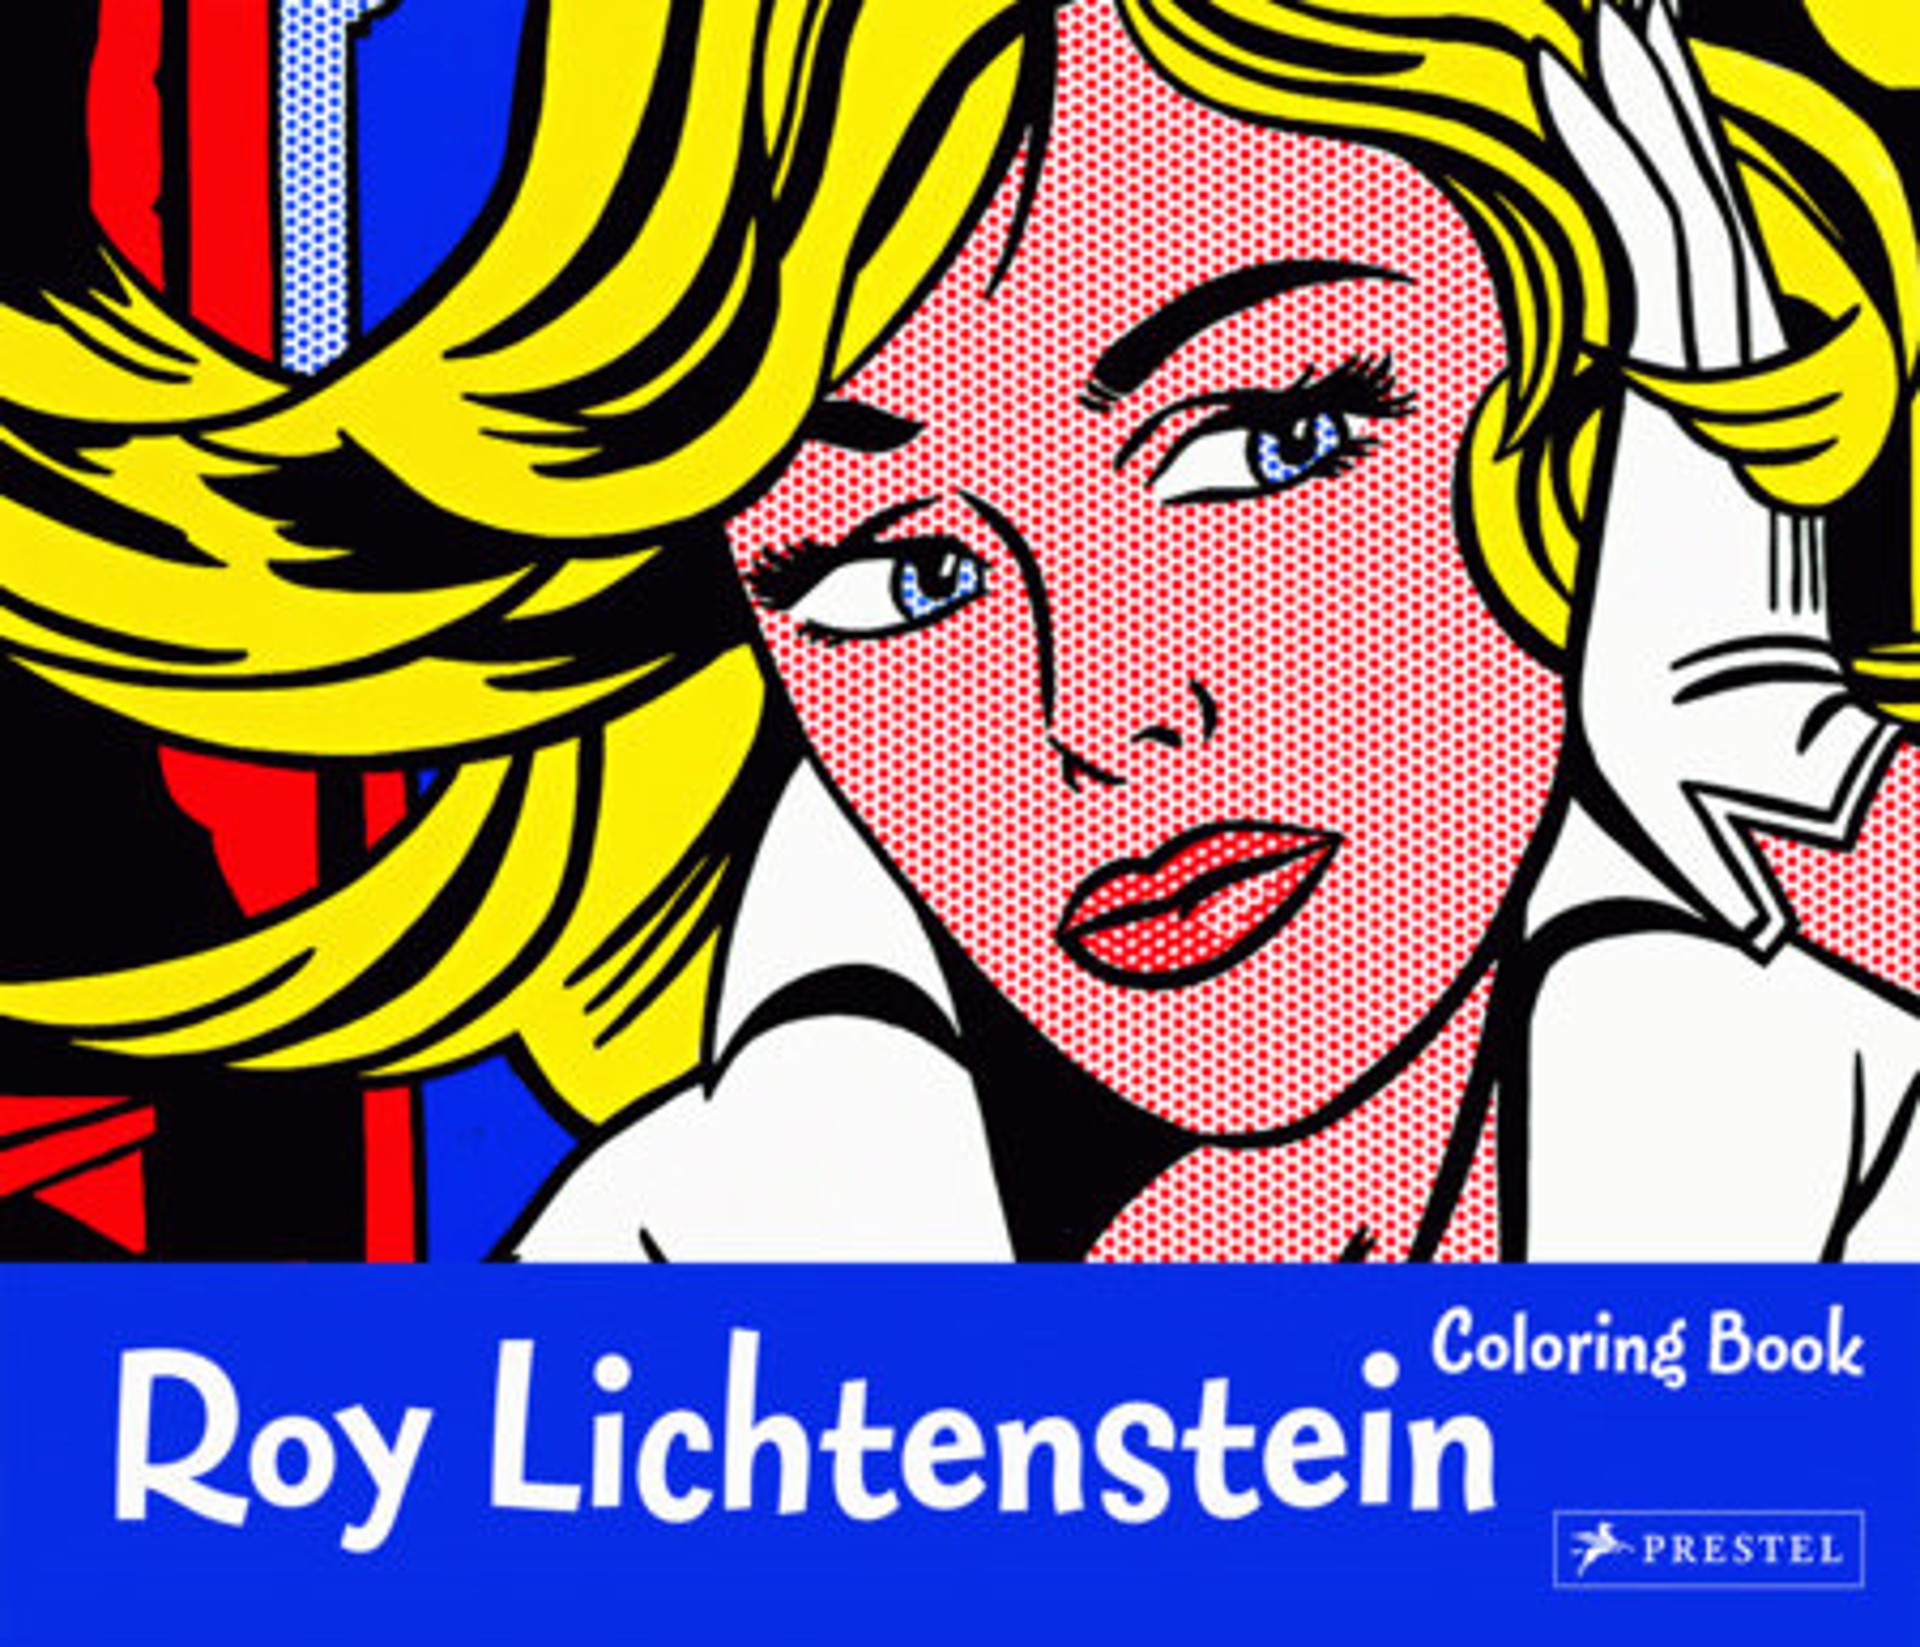 Roy Lichtenstien Coloring Book by Roy Lichtenstein